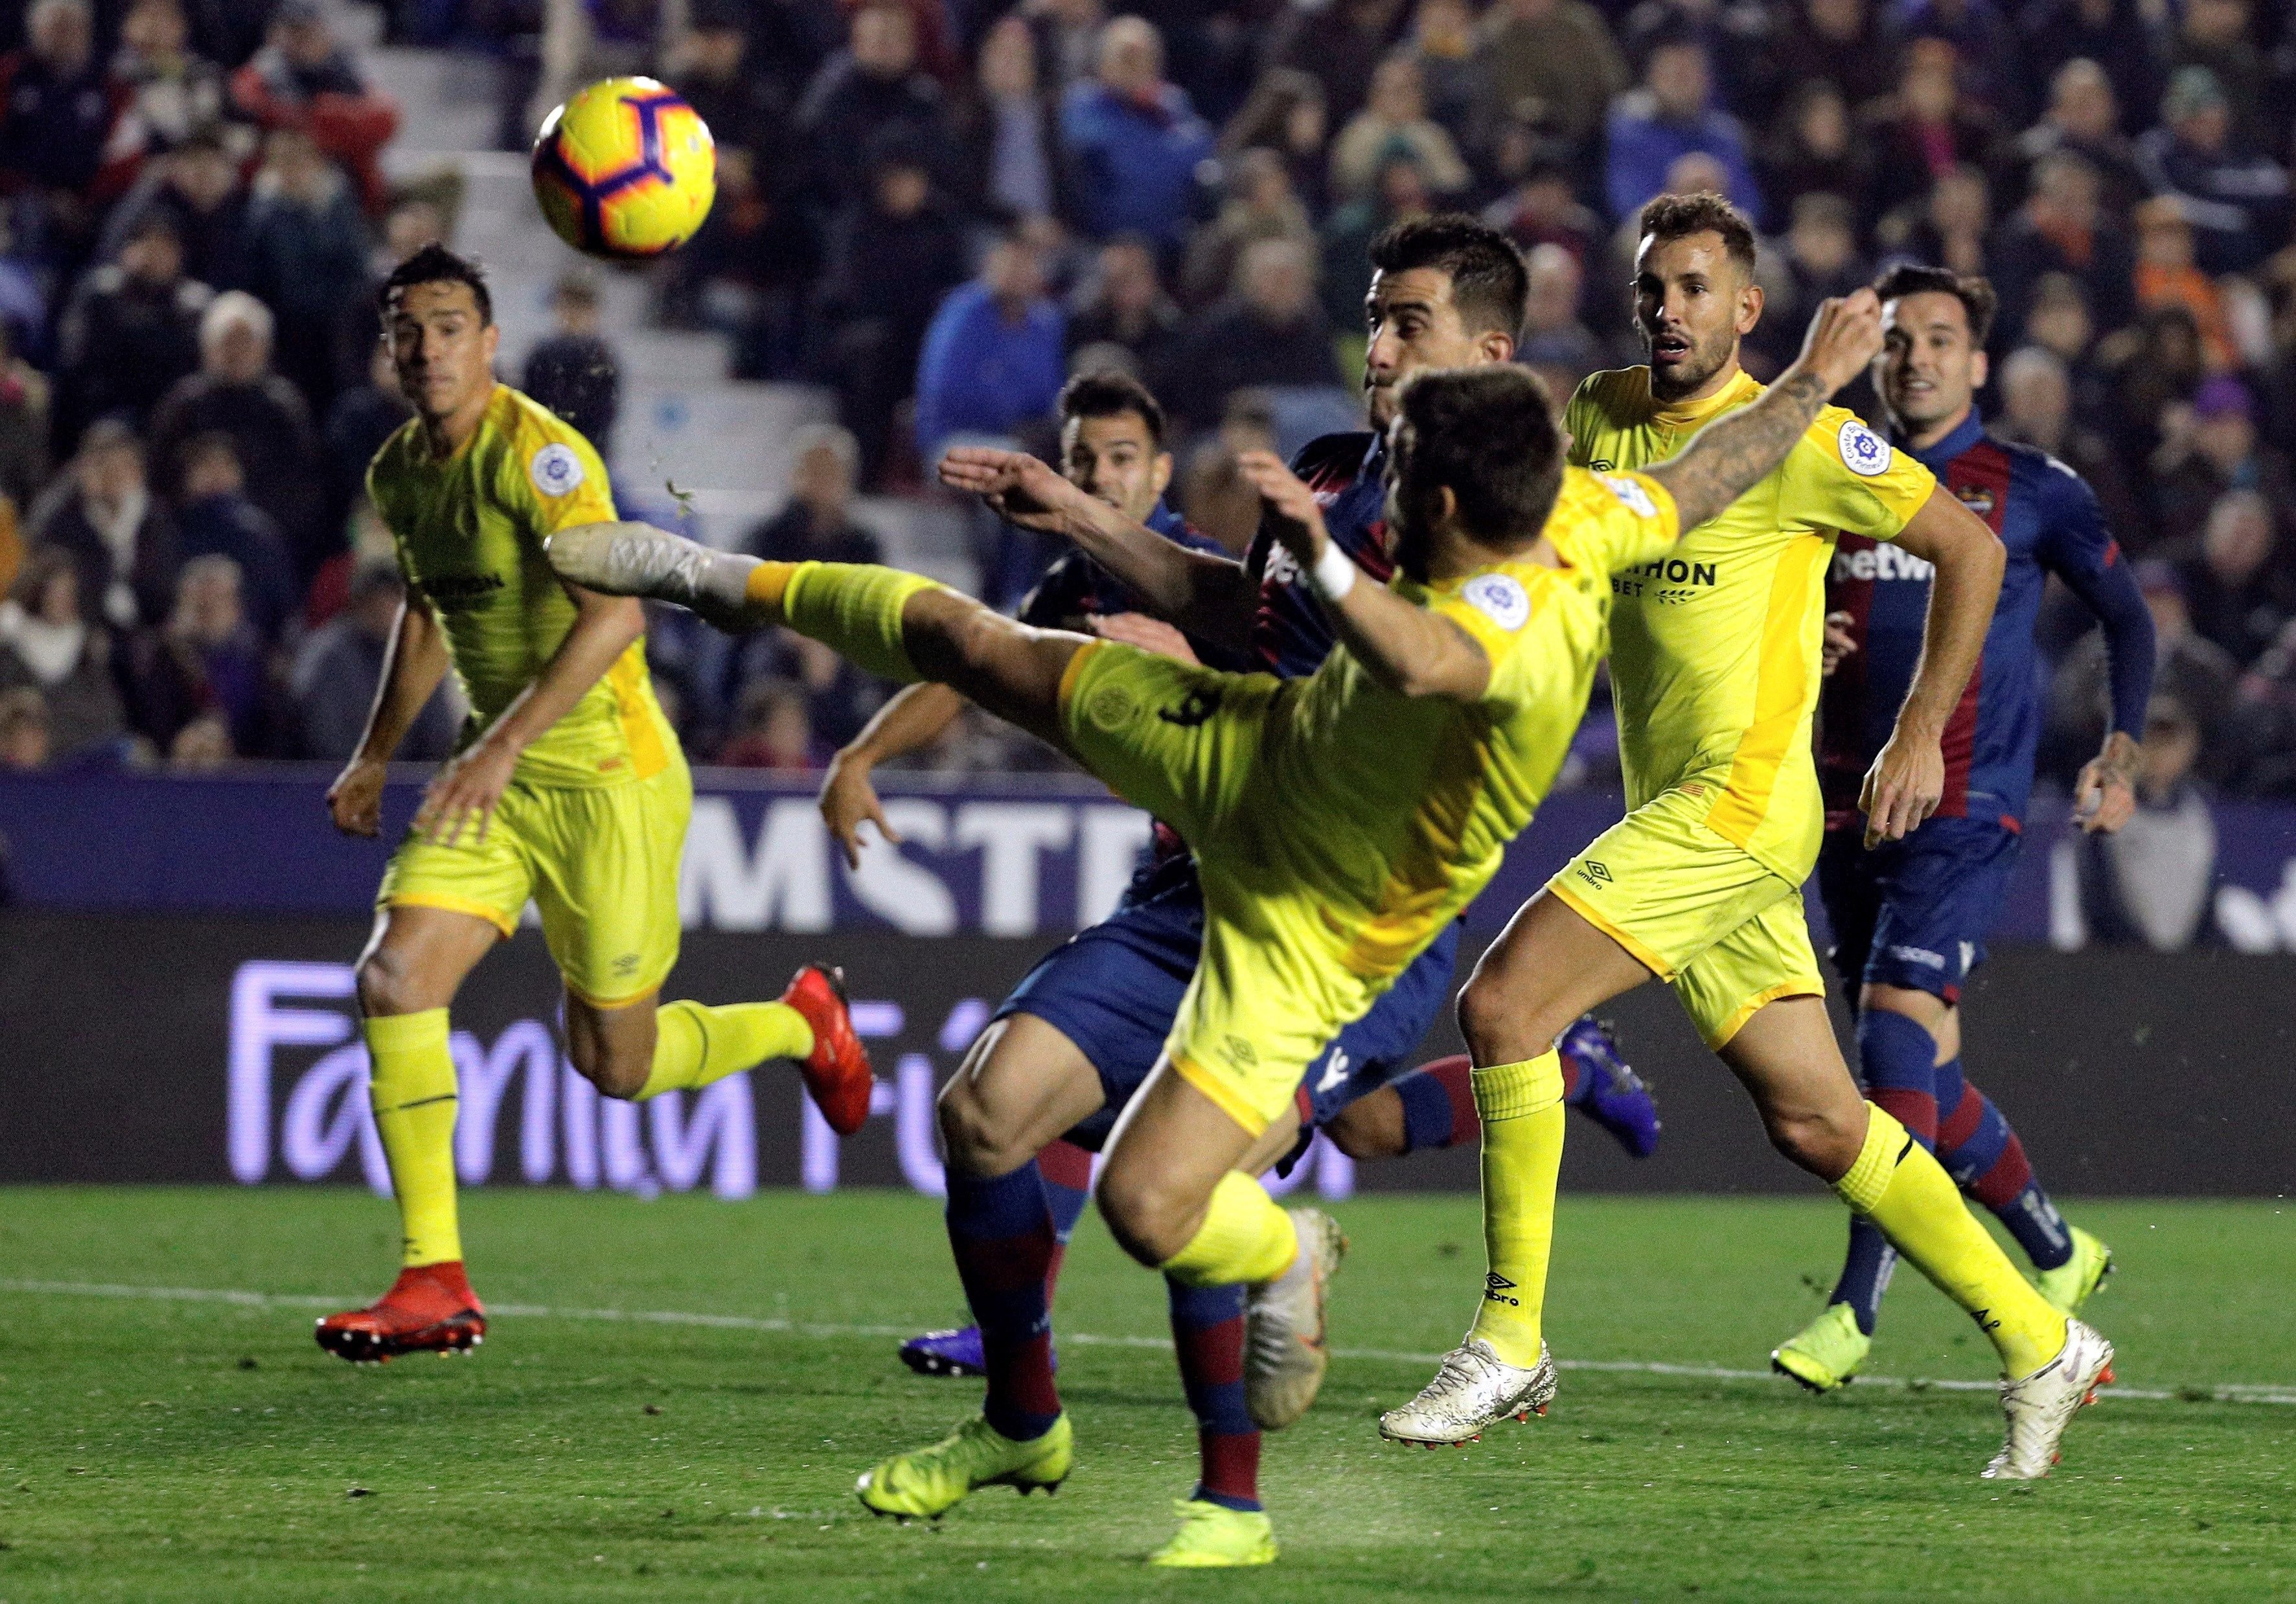 La picardía del Girona no sirve para ganar al Levante (2-2)